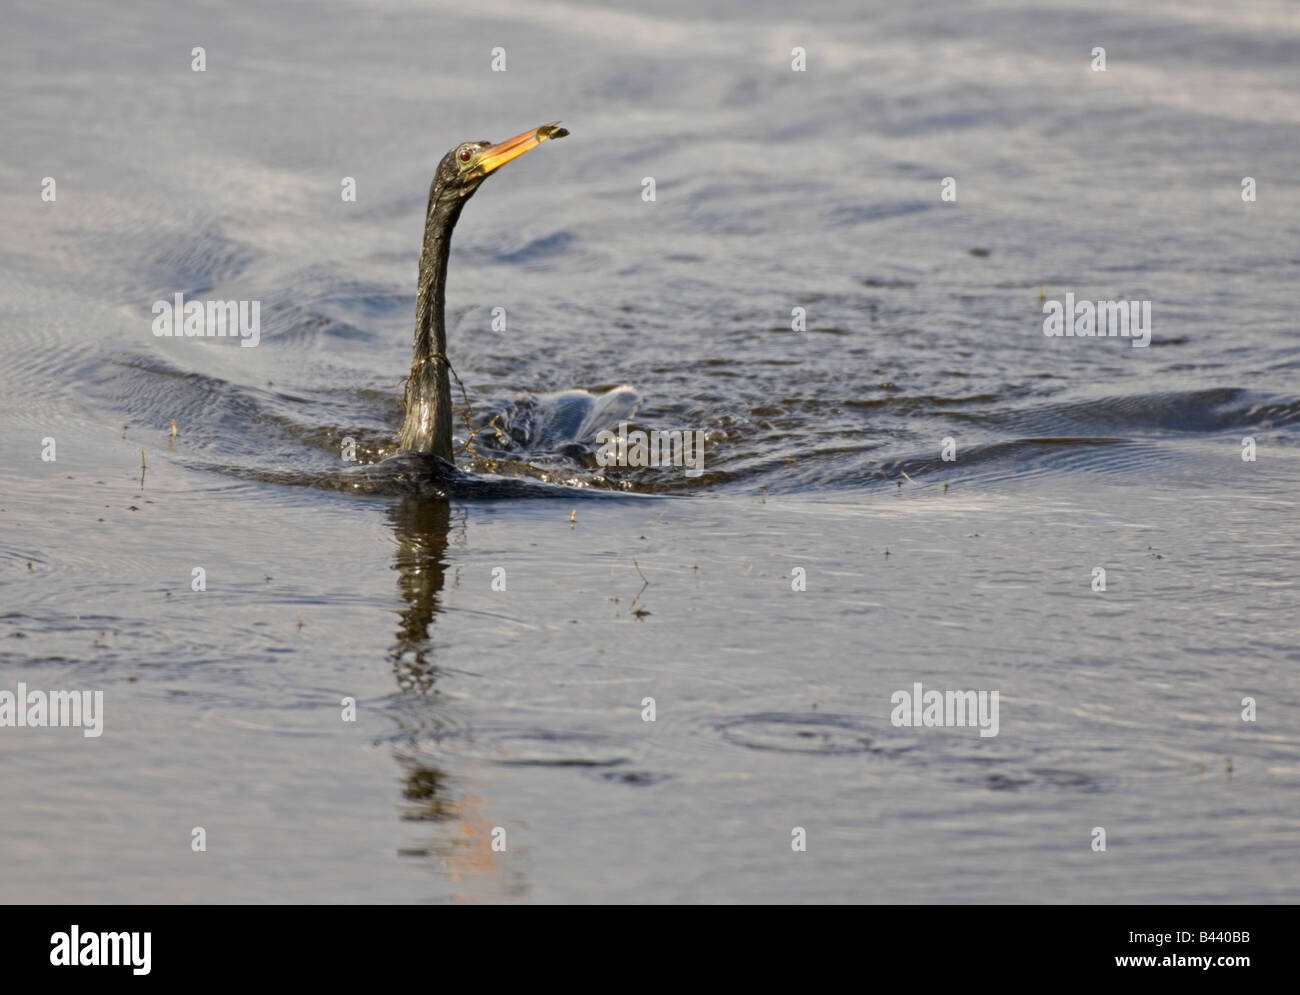 Hunting swimming Anhinga water bird with fish Stock Photo